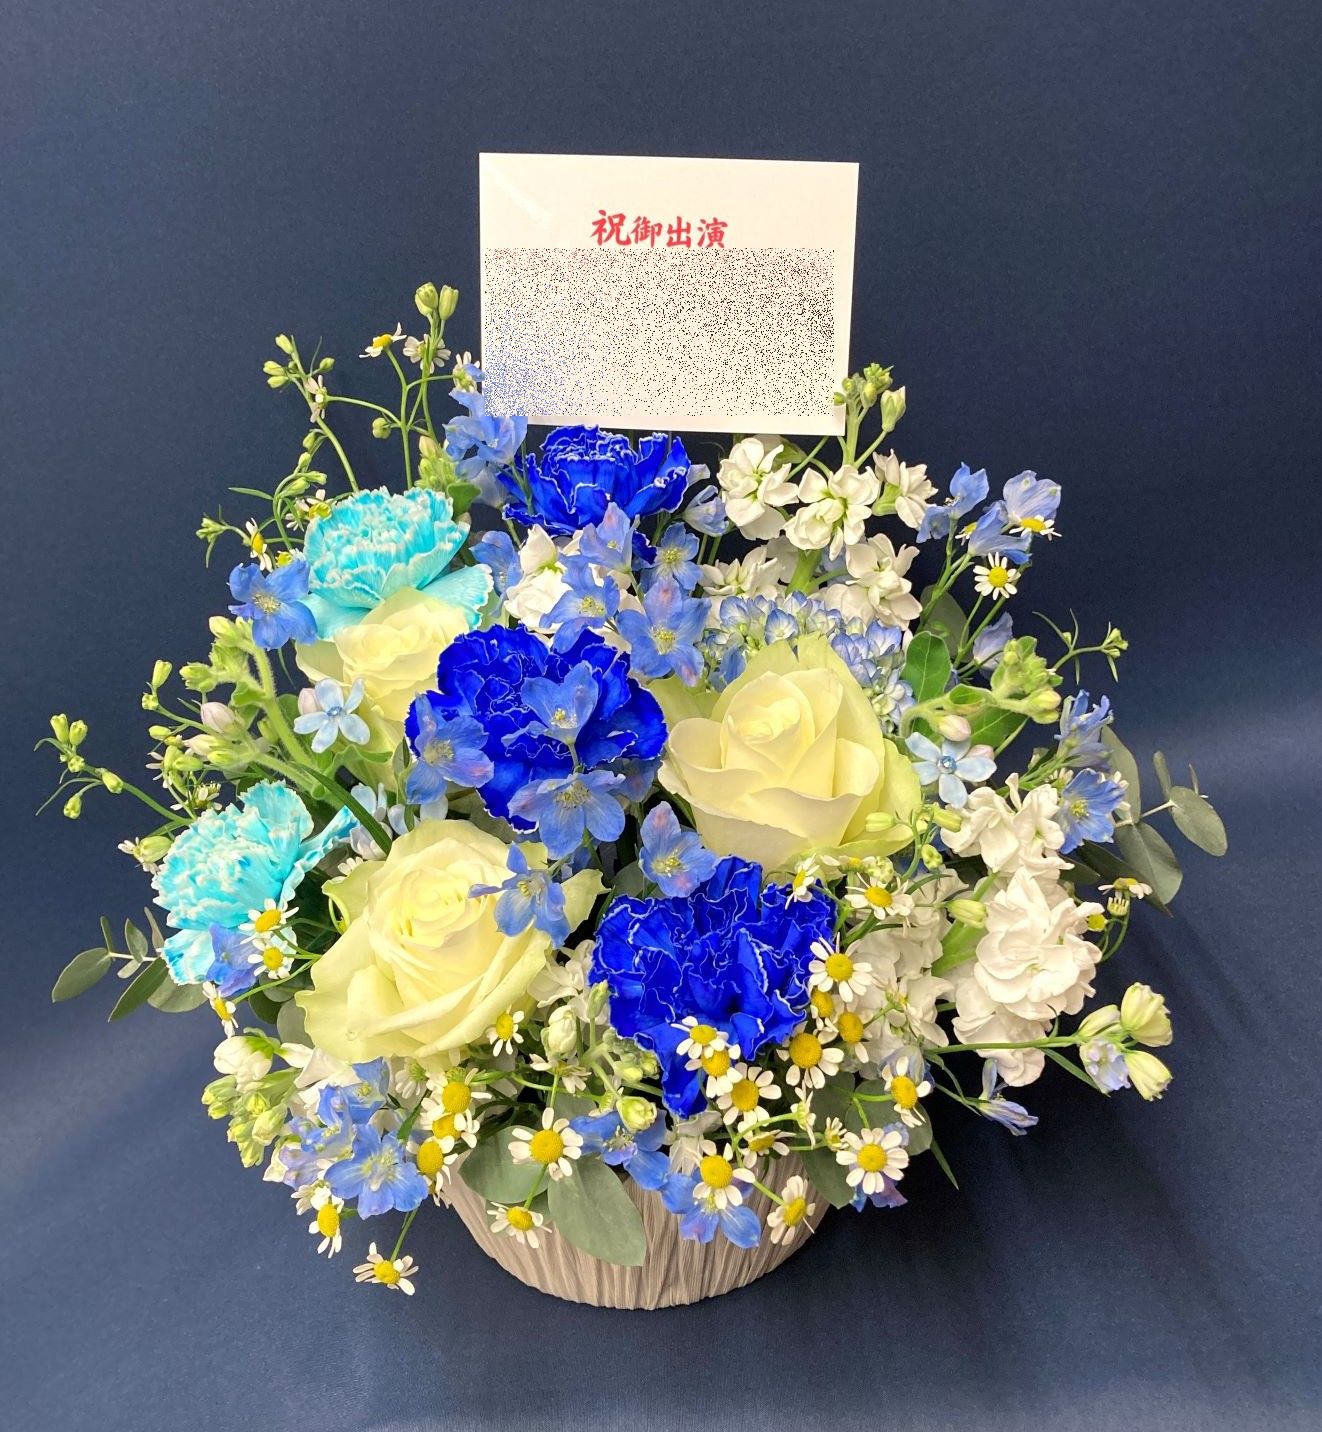 横浜市みなとみらいへ青色のアレンジメントを配達しました。【横浜花屋の花束・スタンド花・胡蝶蘭・バルーン・アレンジメント配達事例975】